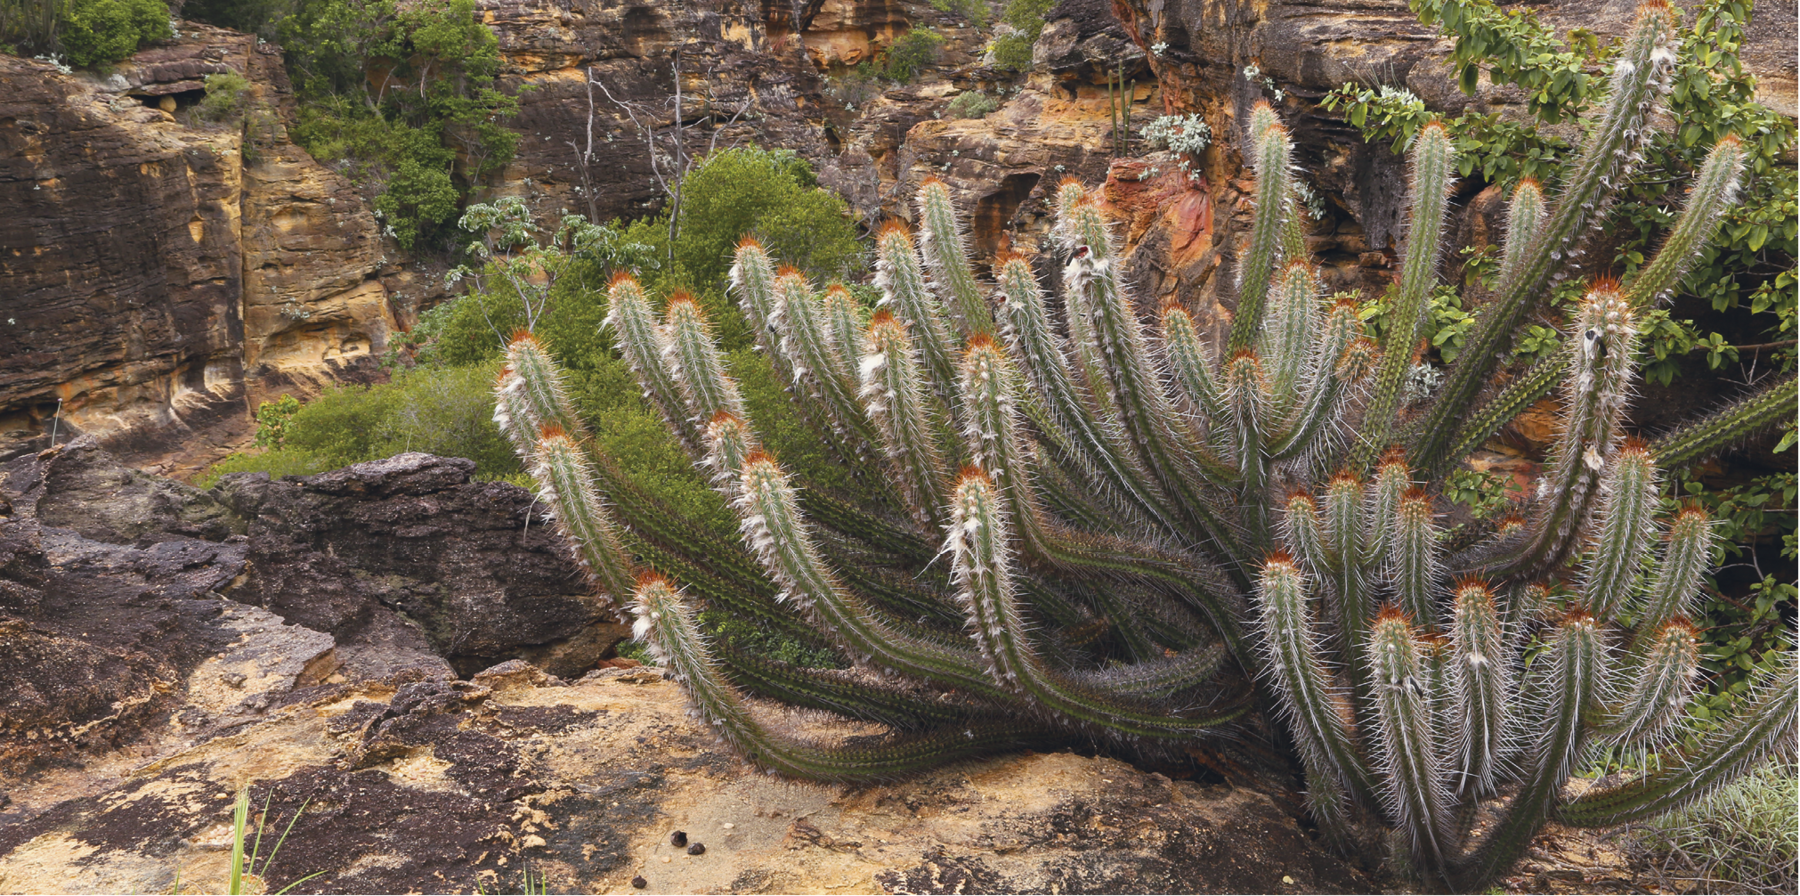 Fotografia. Imagem colorida, formato paisagem. Em primeiro plano, uma planta com espinhos, típica da Caatinga. Em segundo plano, o bioma Caatinga.